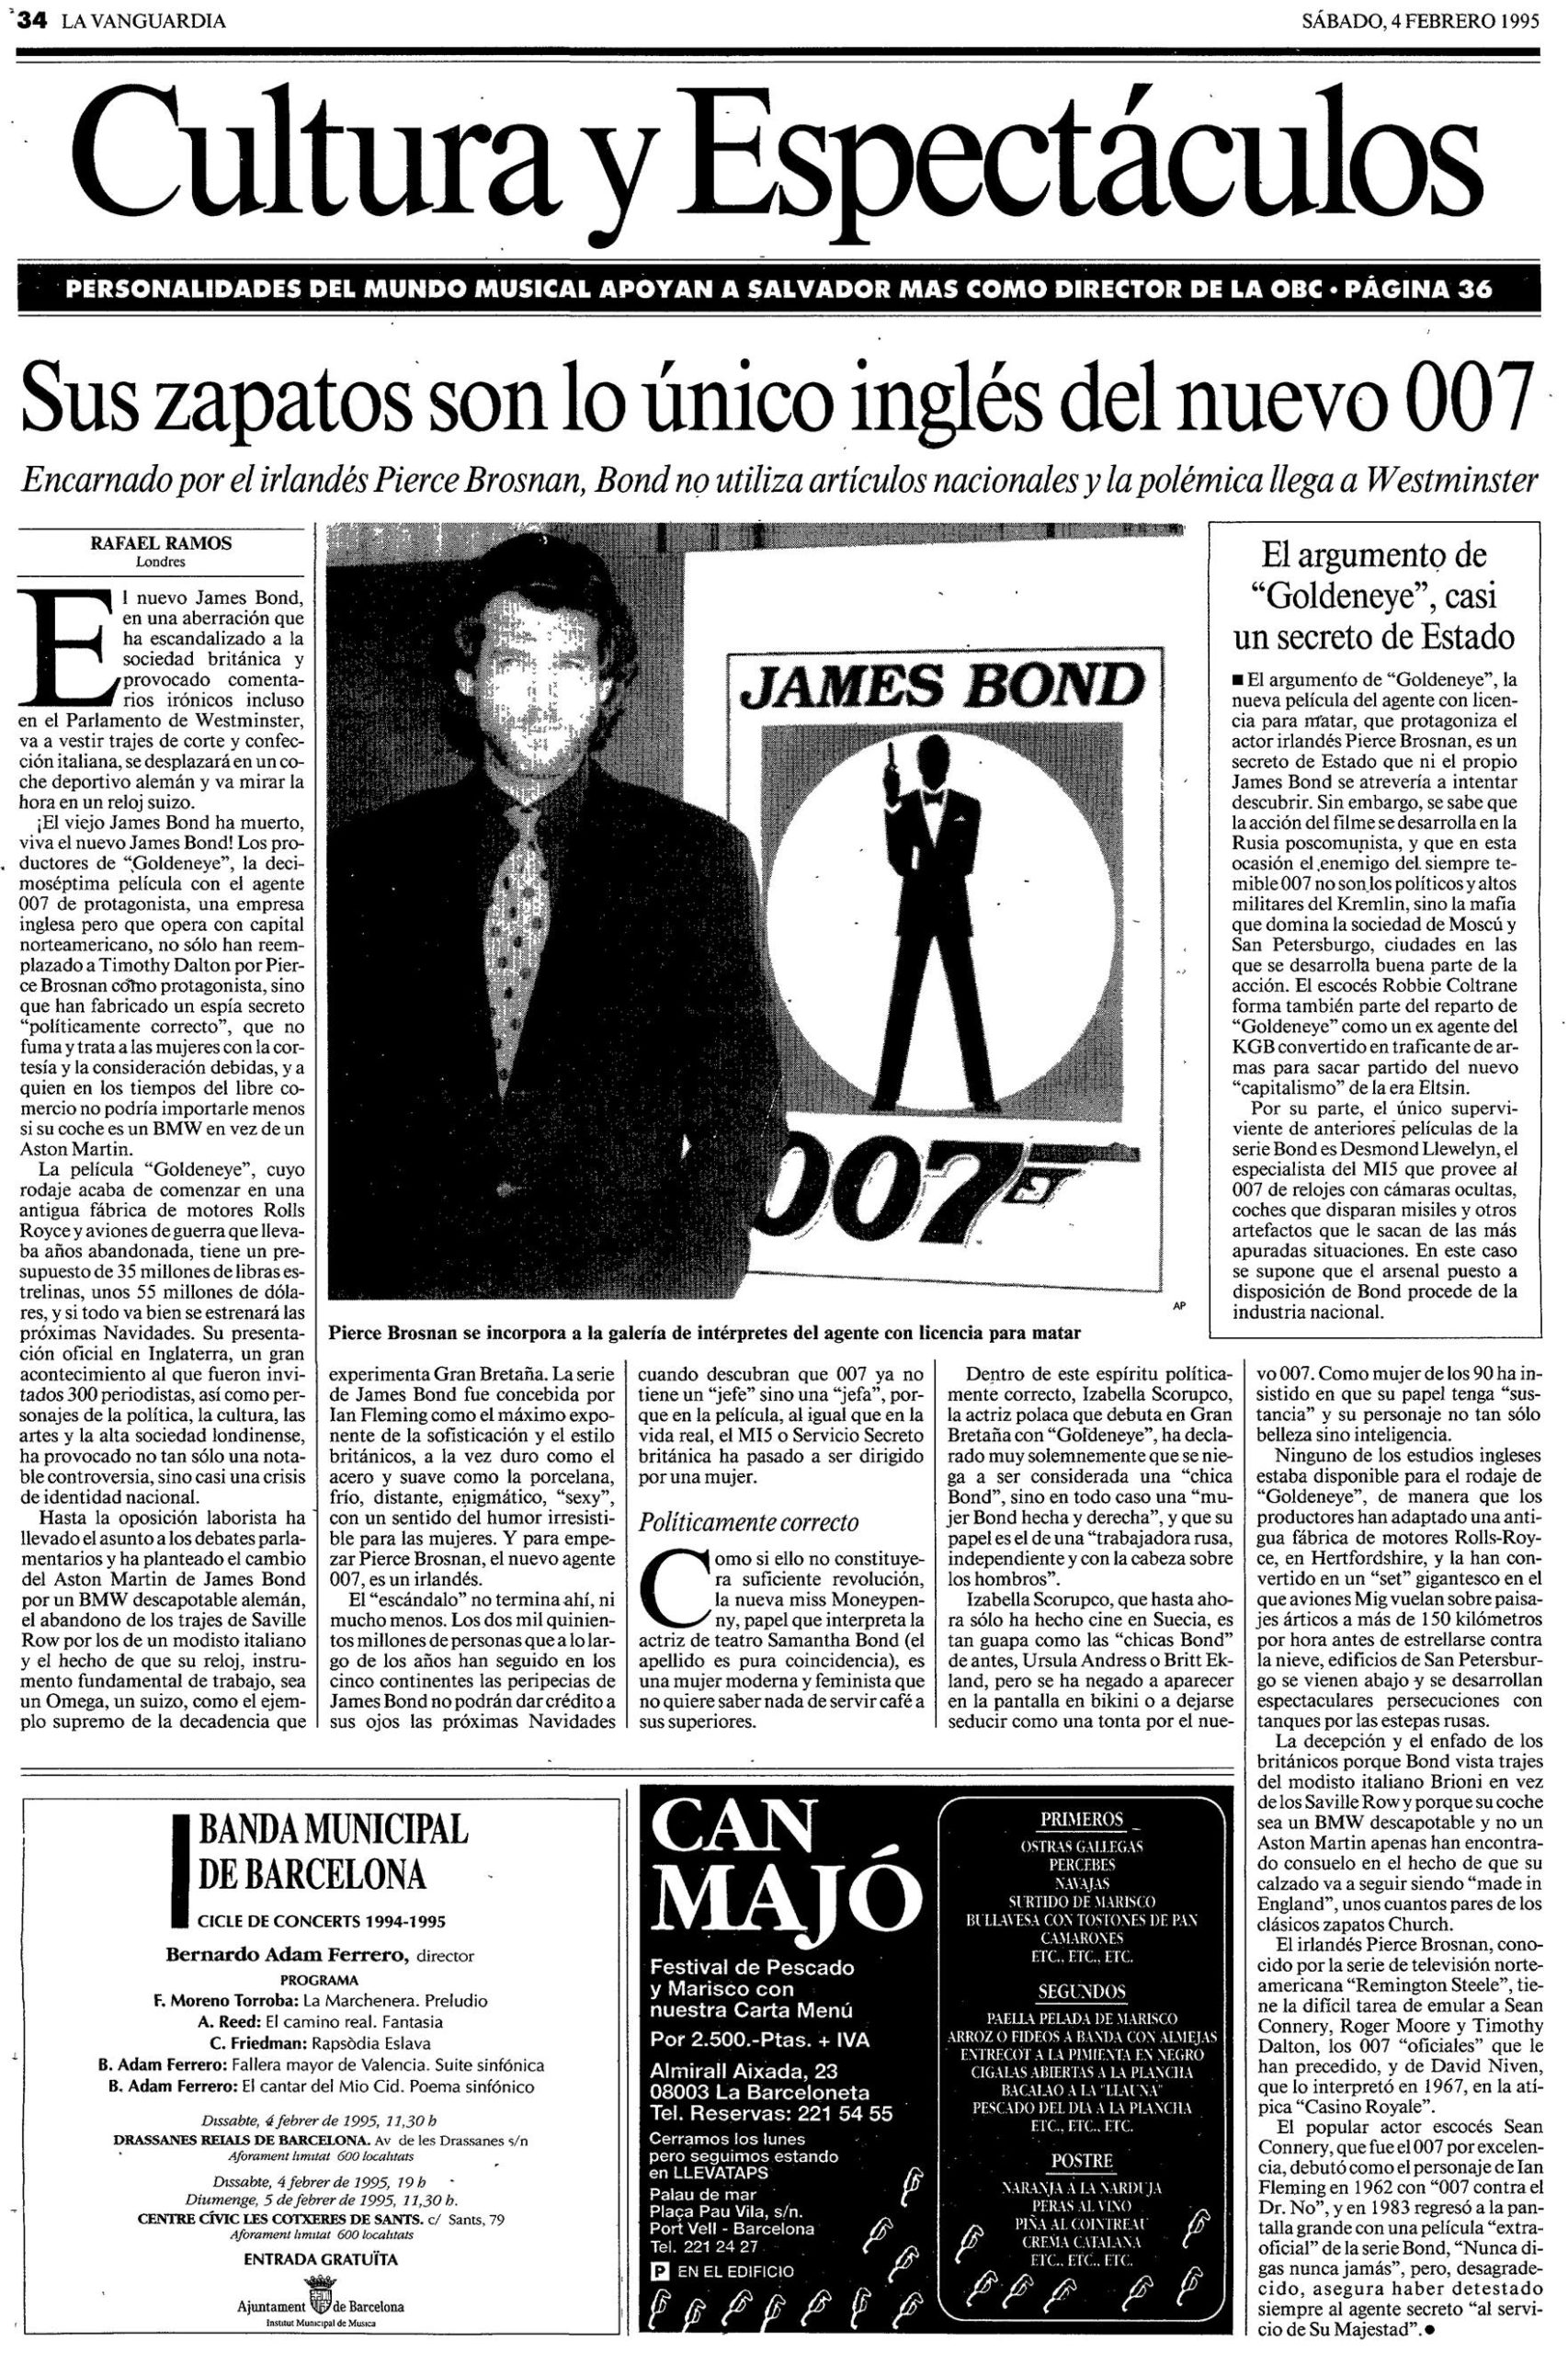 17 1995 02 04 La Vanguardia Barcelona 034 No ingles scaled